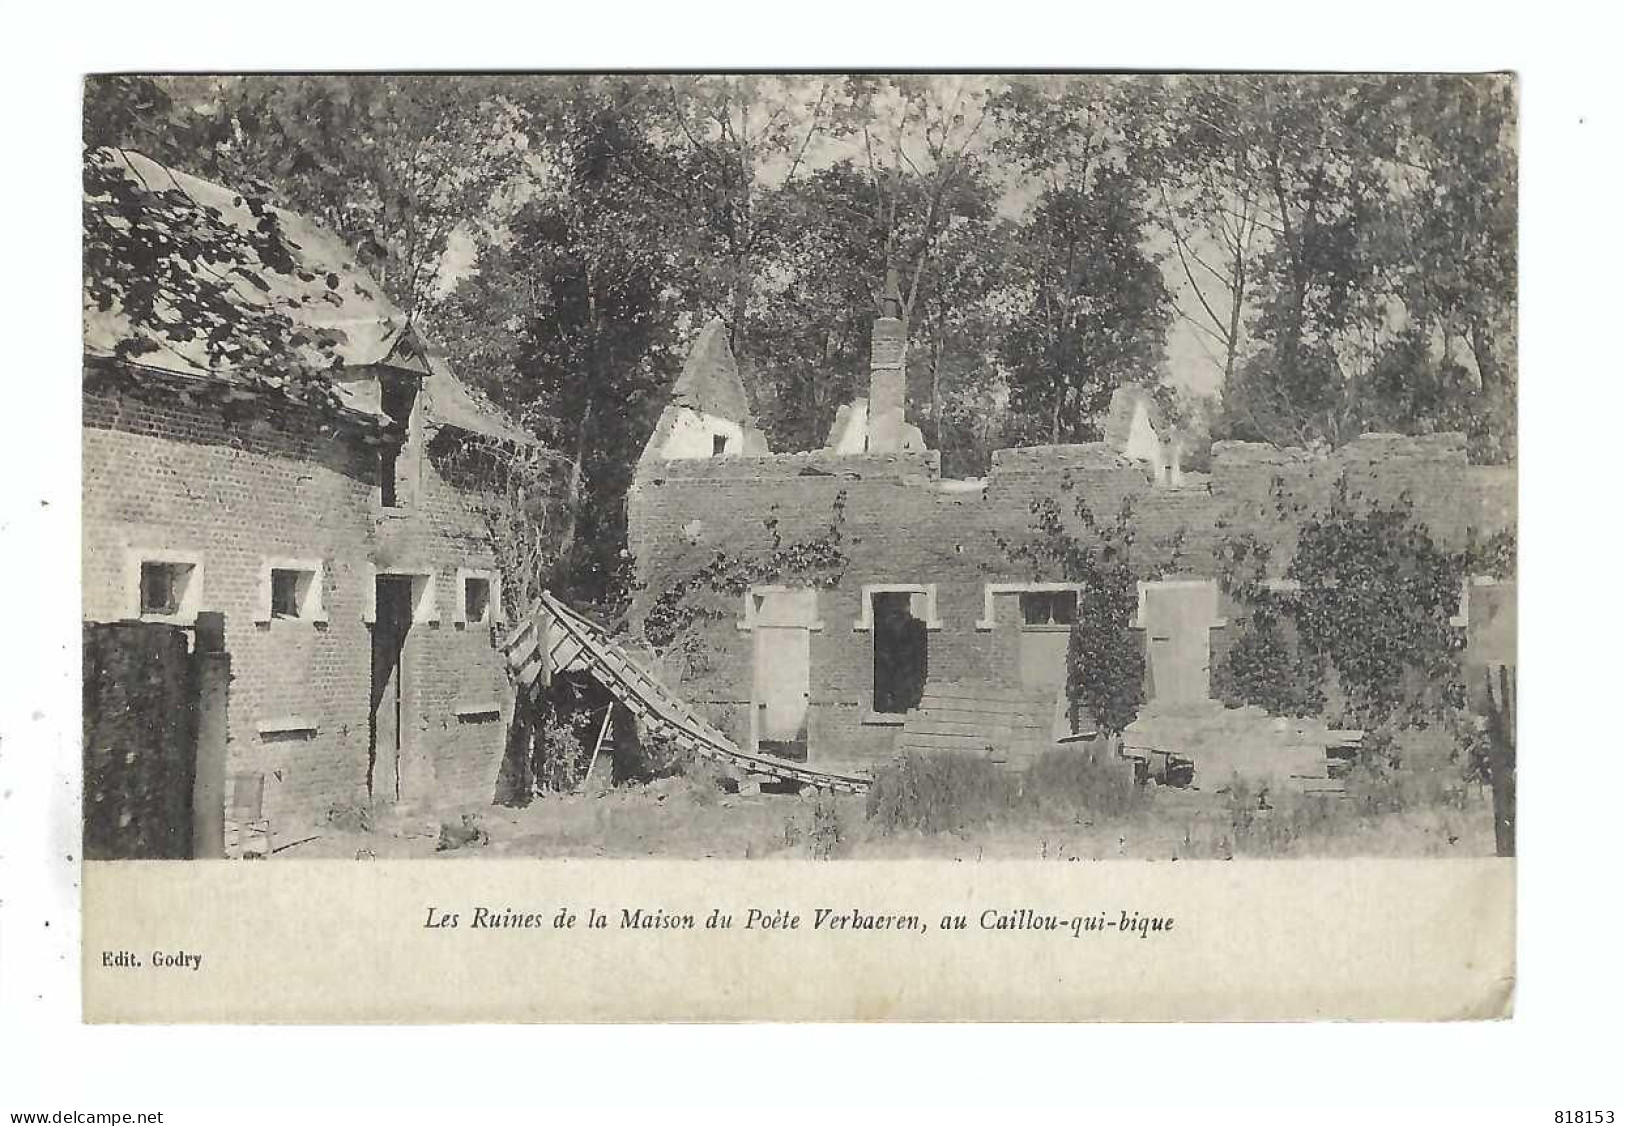 Caillou-qui-bique  Les Ruines De La Maison Du Poète Verhaeren - Honnelles